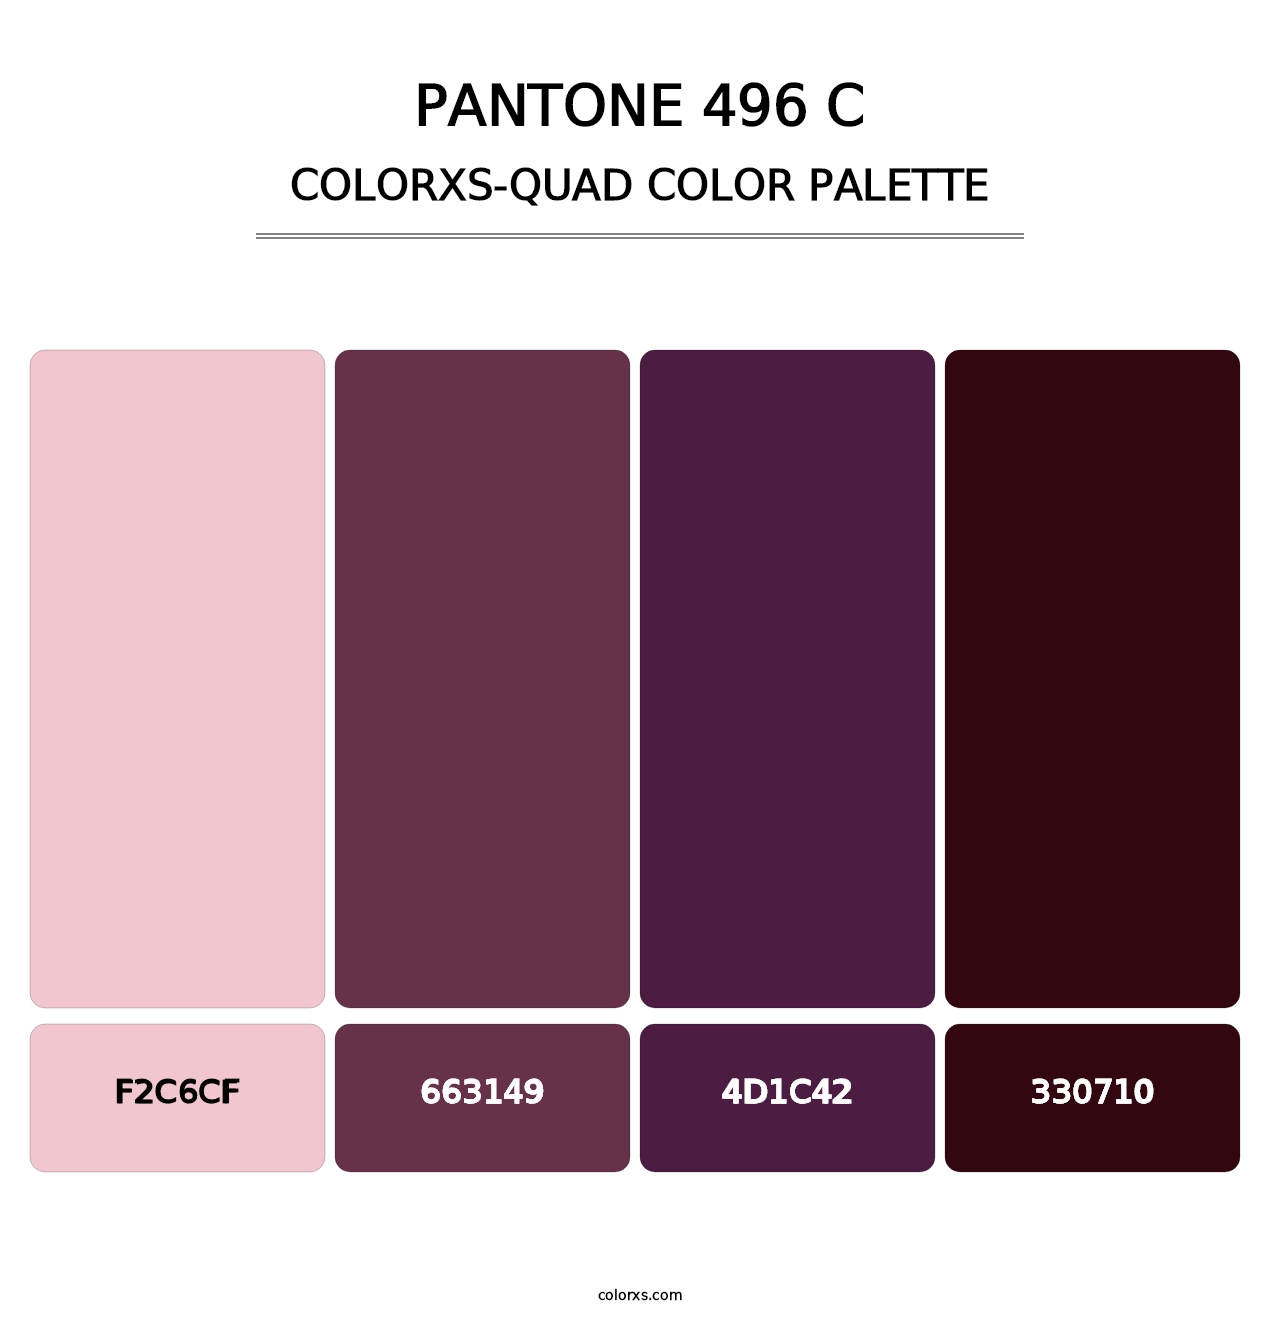 PANTONE 496 C - Colorxs Quad Palette